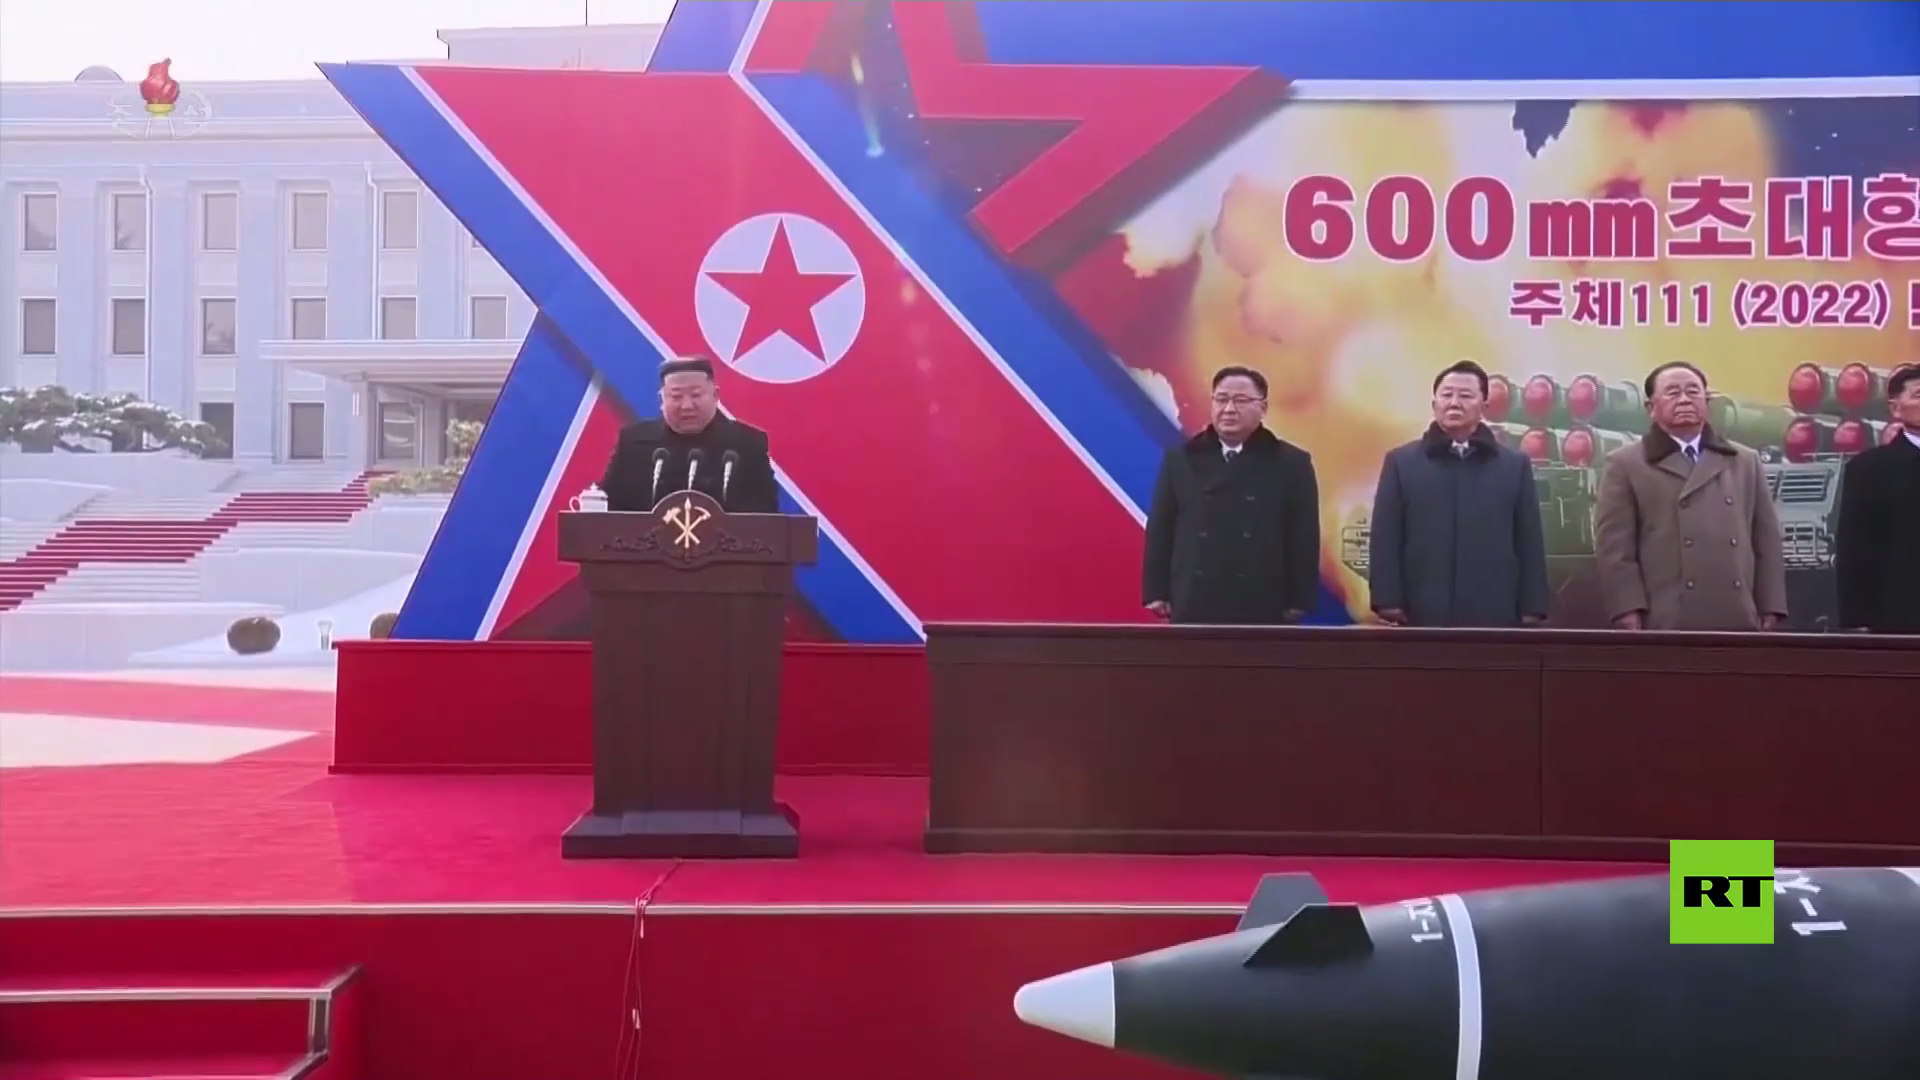 زعيم كوريا الشمالية يزور ضريح جده ووالده